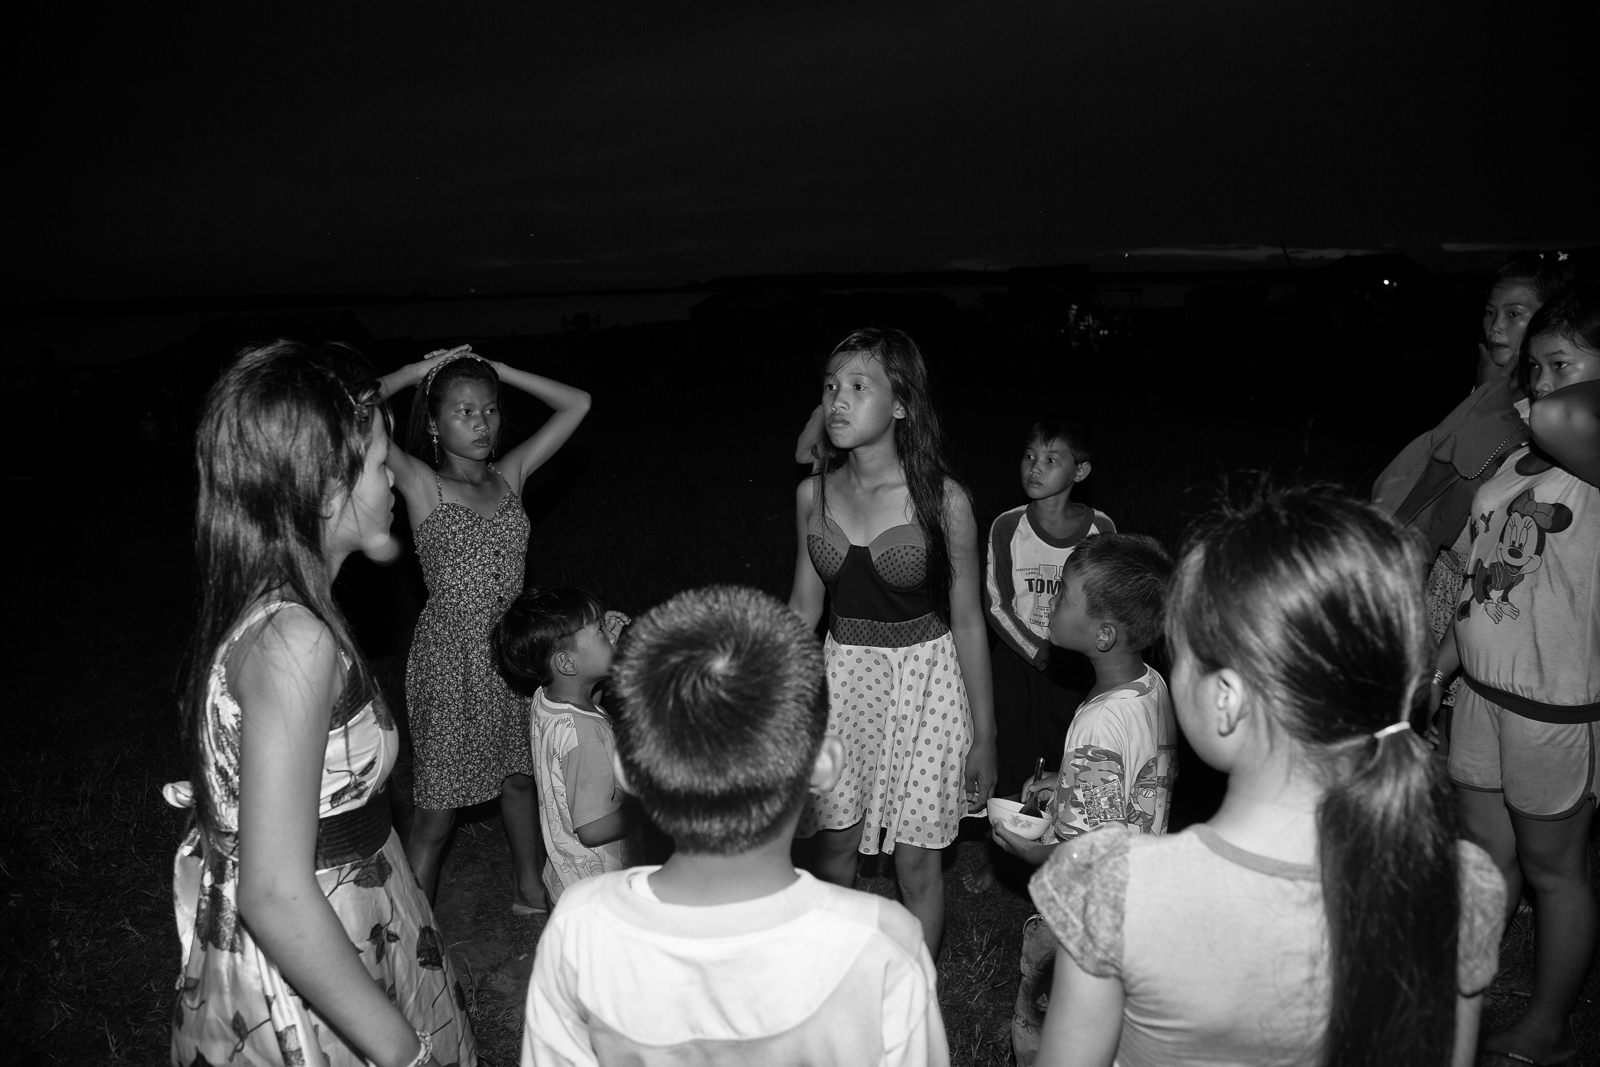 
Bọn trẻ chơi đùa rồi chửi nhau giữa đêm trên bãi đất sát hồ Dầu Tiếng
